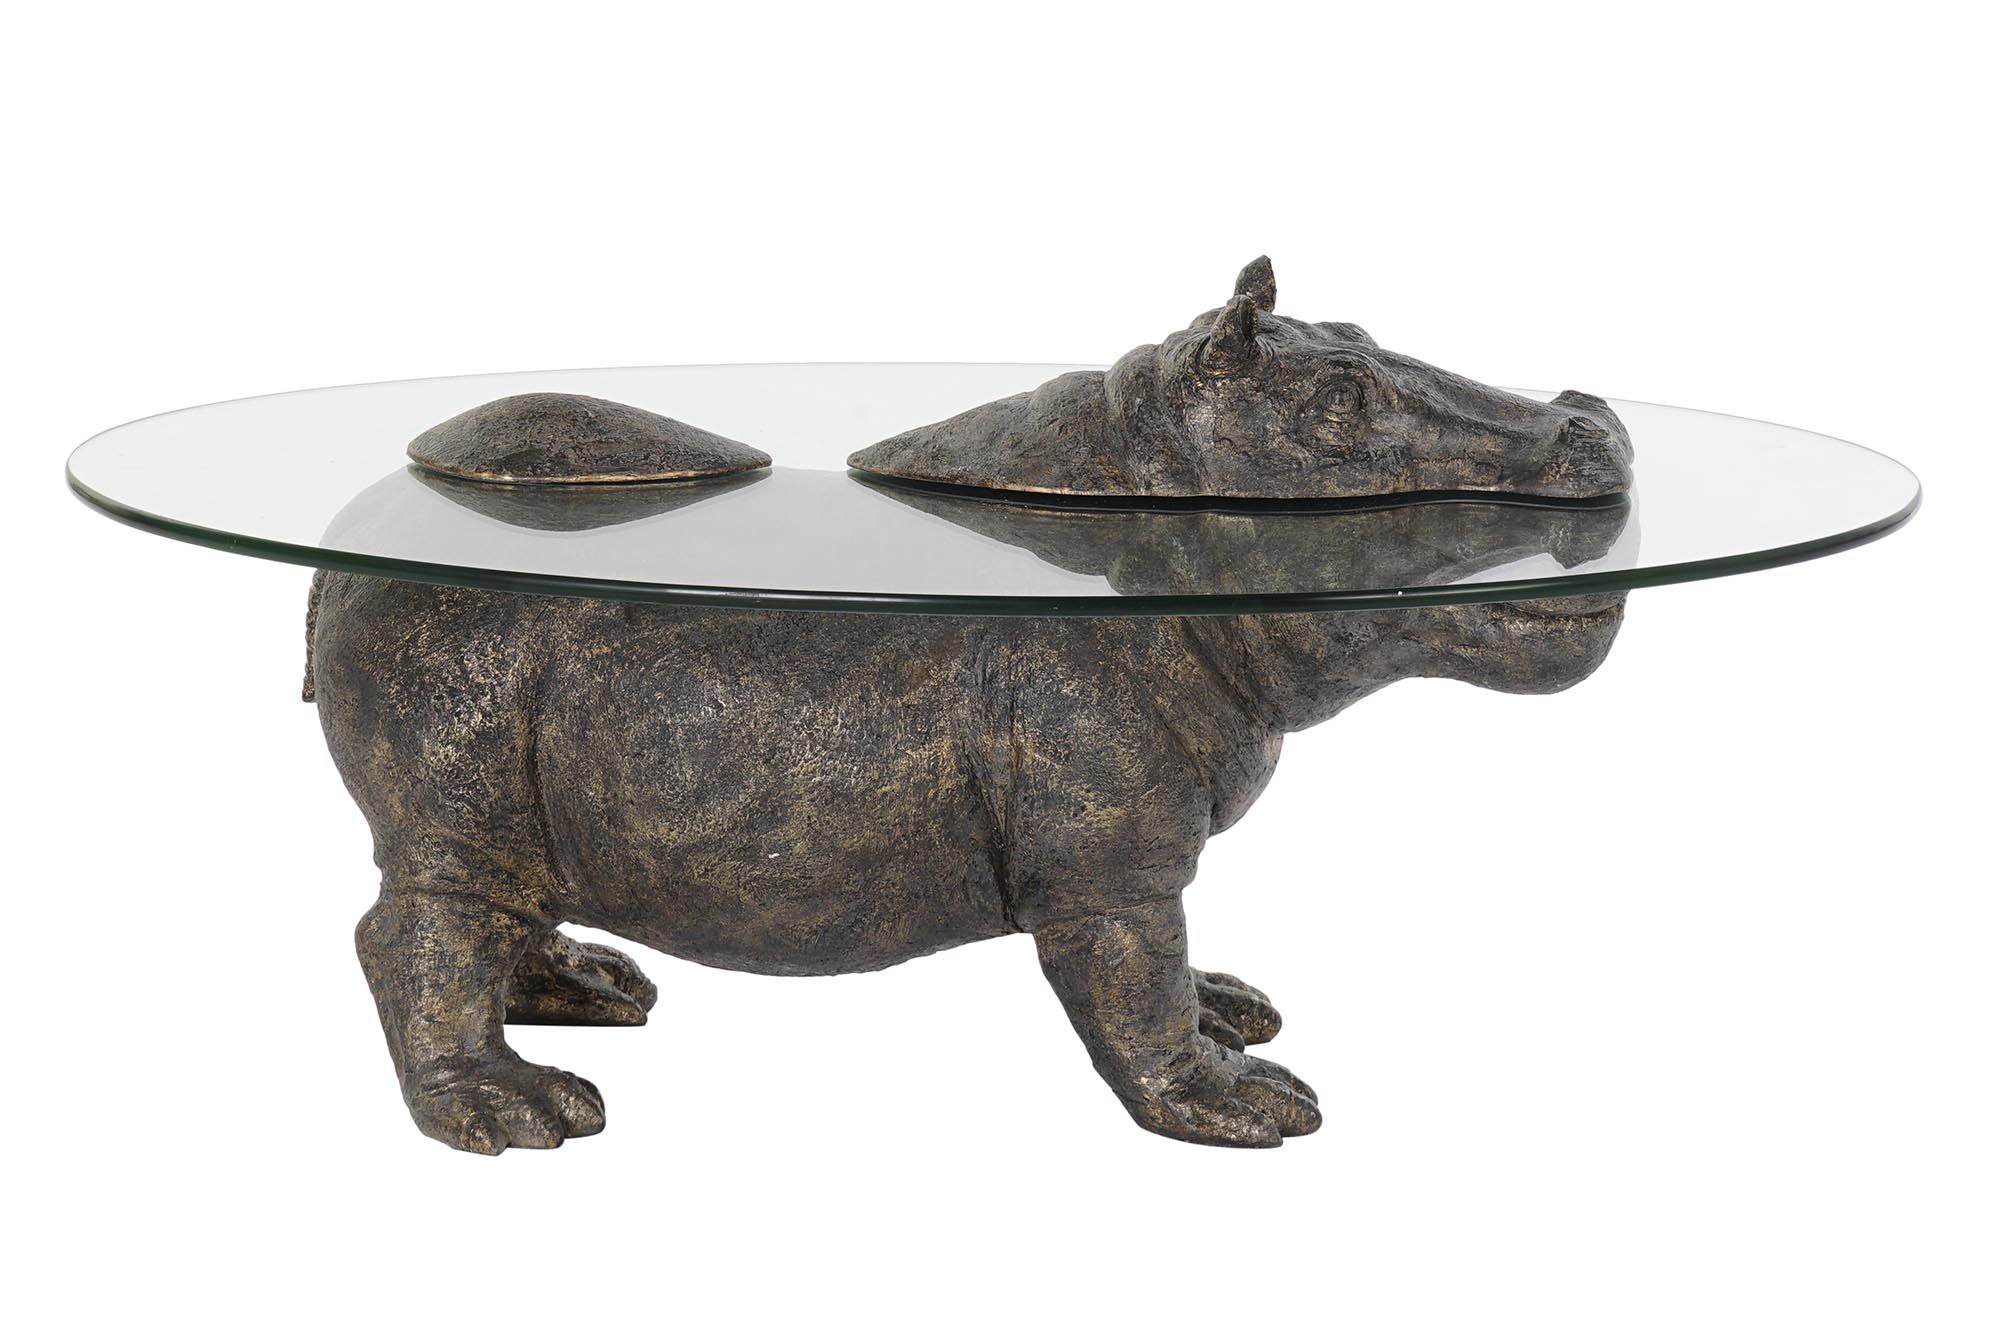 Esprit d'Autrefois boutique de meubles et décoration vous propose le table basse plateau en verre pied statue hippo debout anthracite